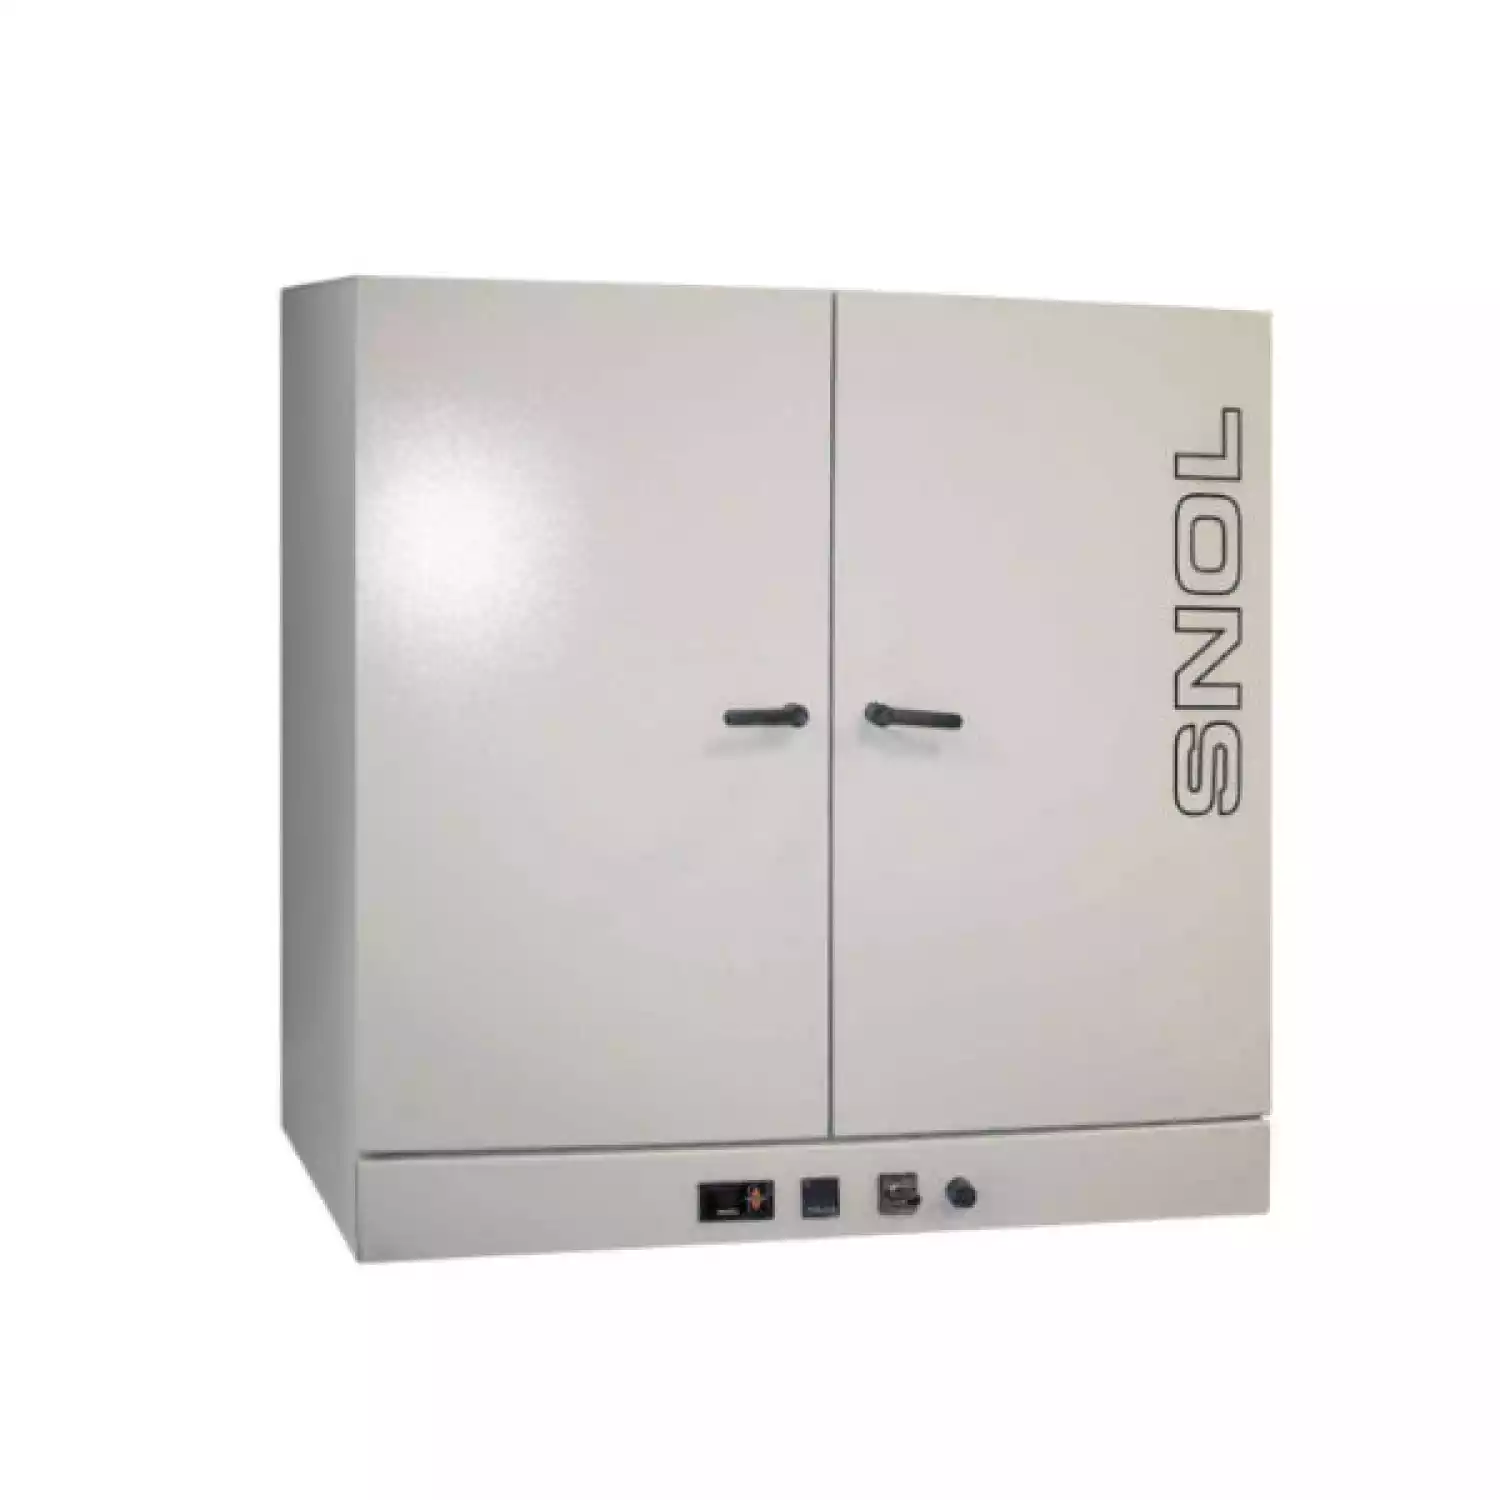 SNOL 420/300 LFNEc шкаф сушильный (420 л, нержавеющая сталь, программируемый) - 1